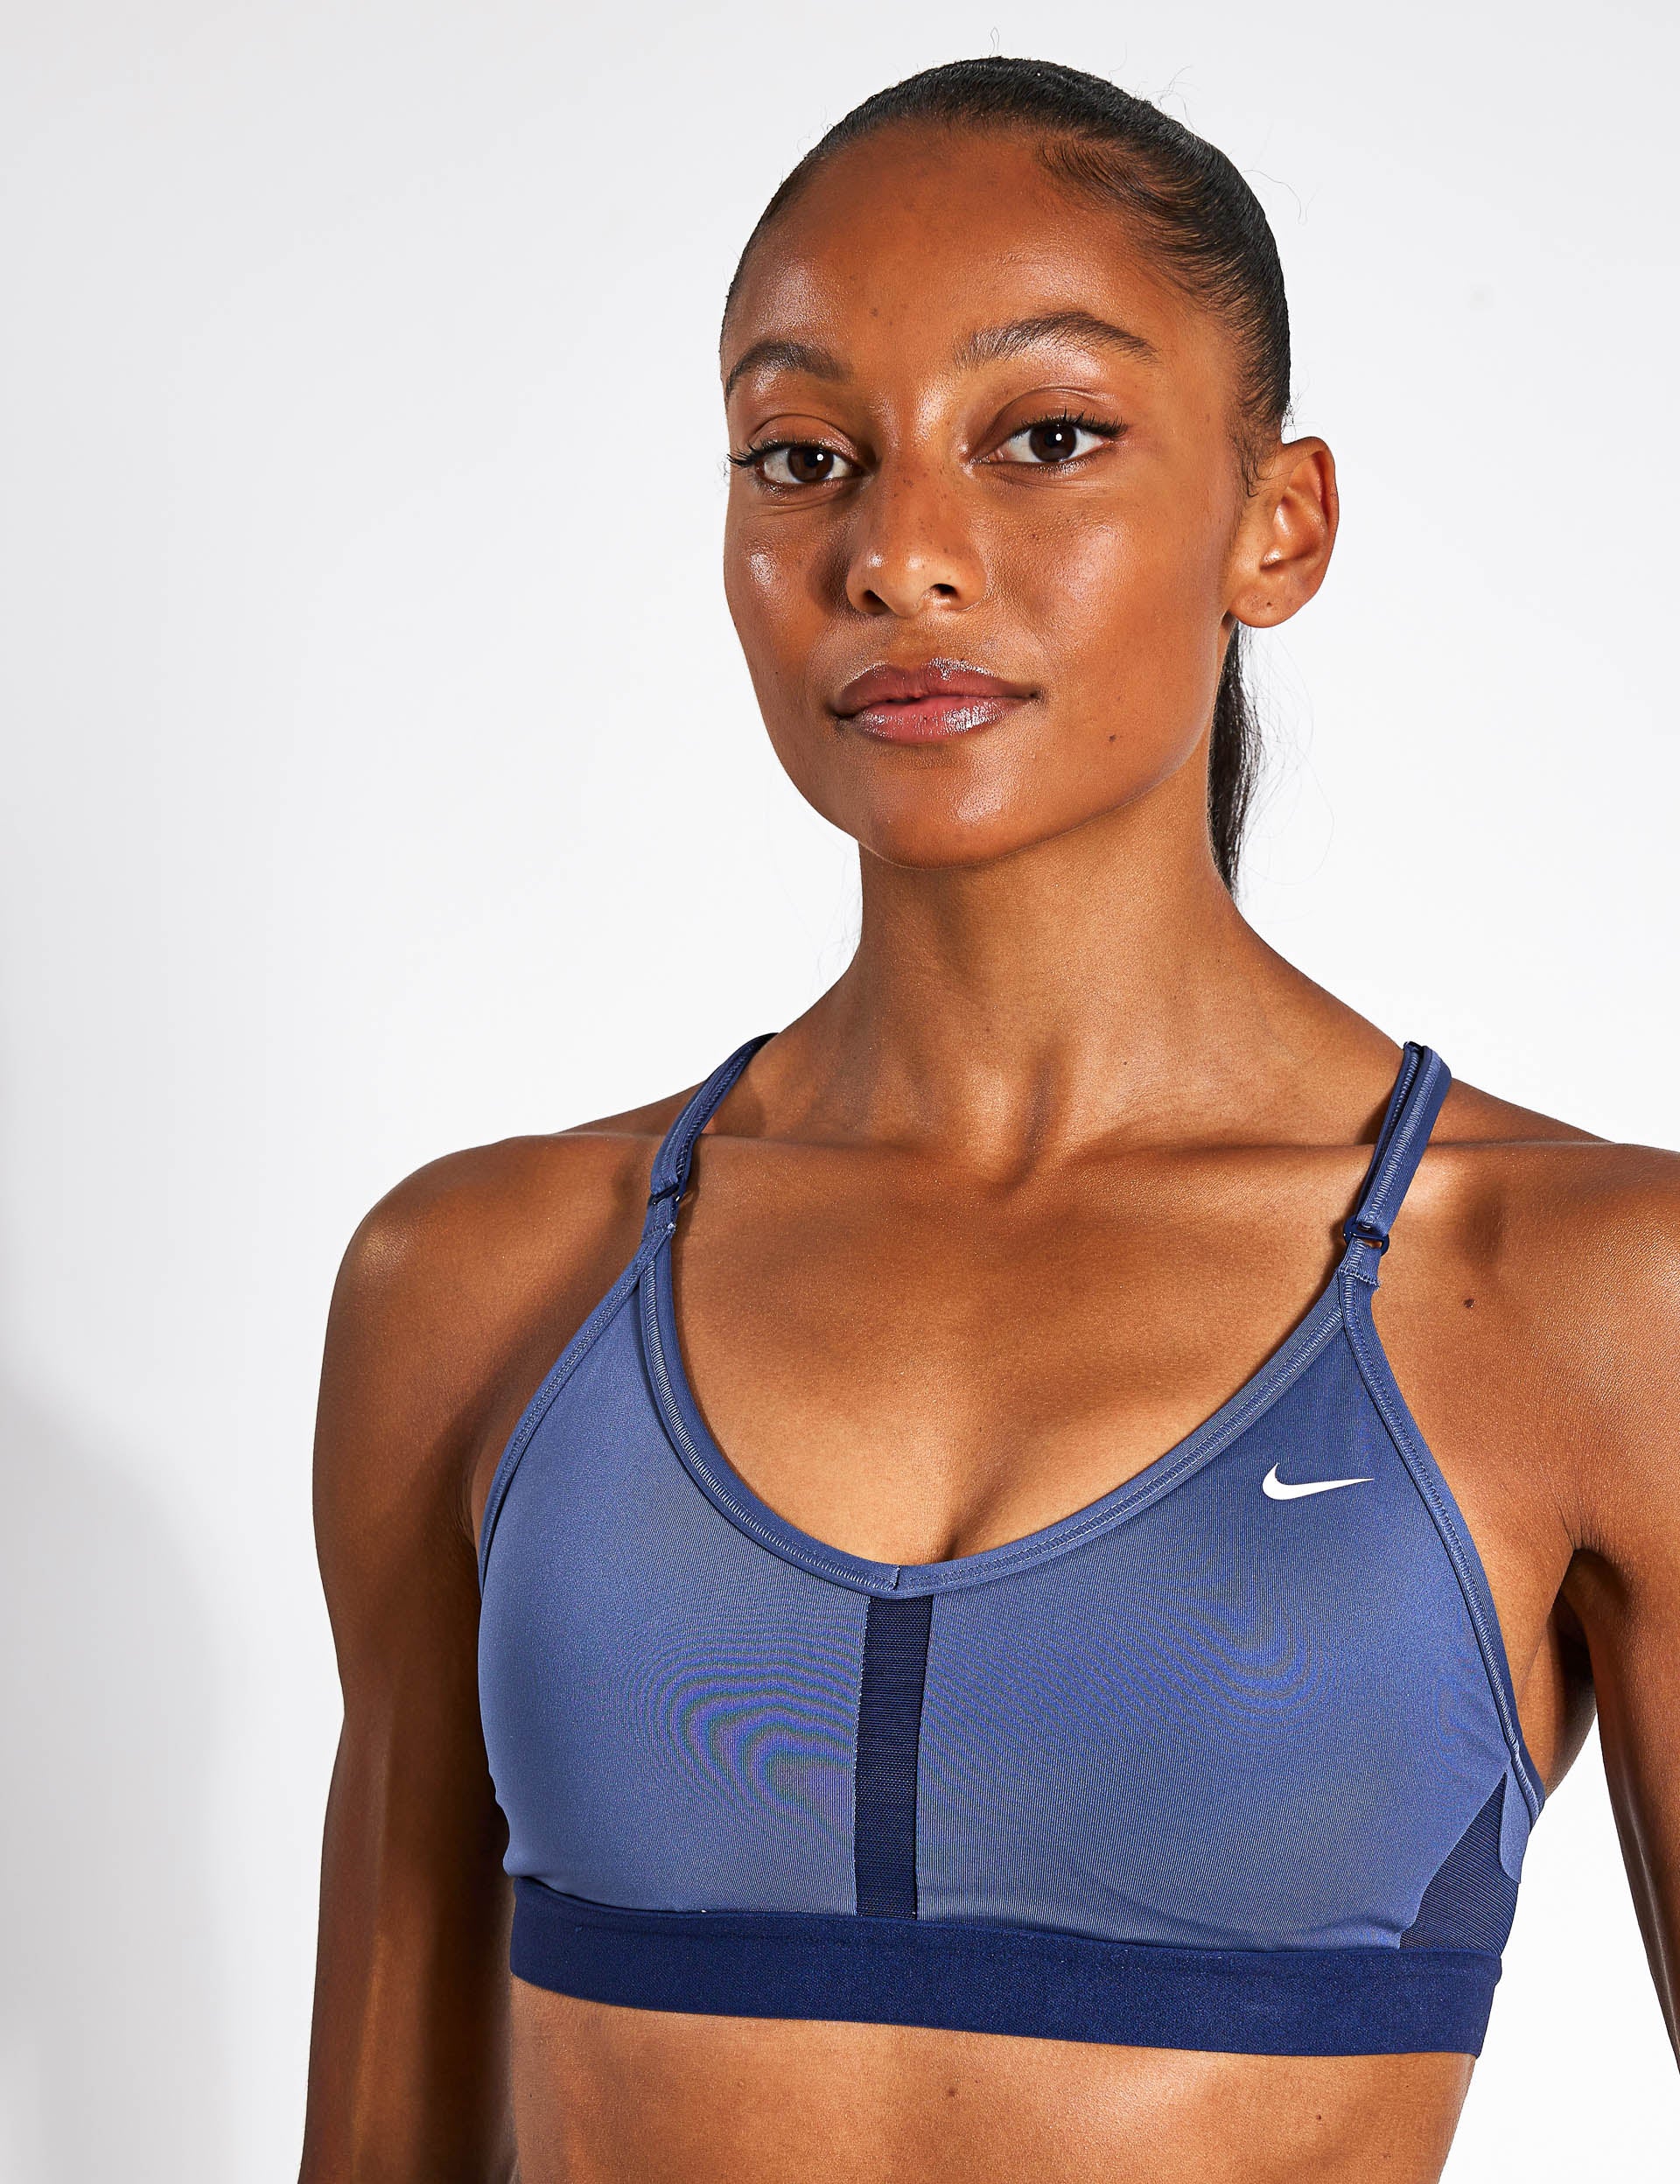 Nike Yoga Dri-FIT Indy Longline Bra in light blue for women - Buy Online! -  HERE